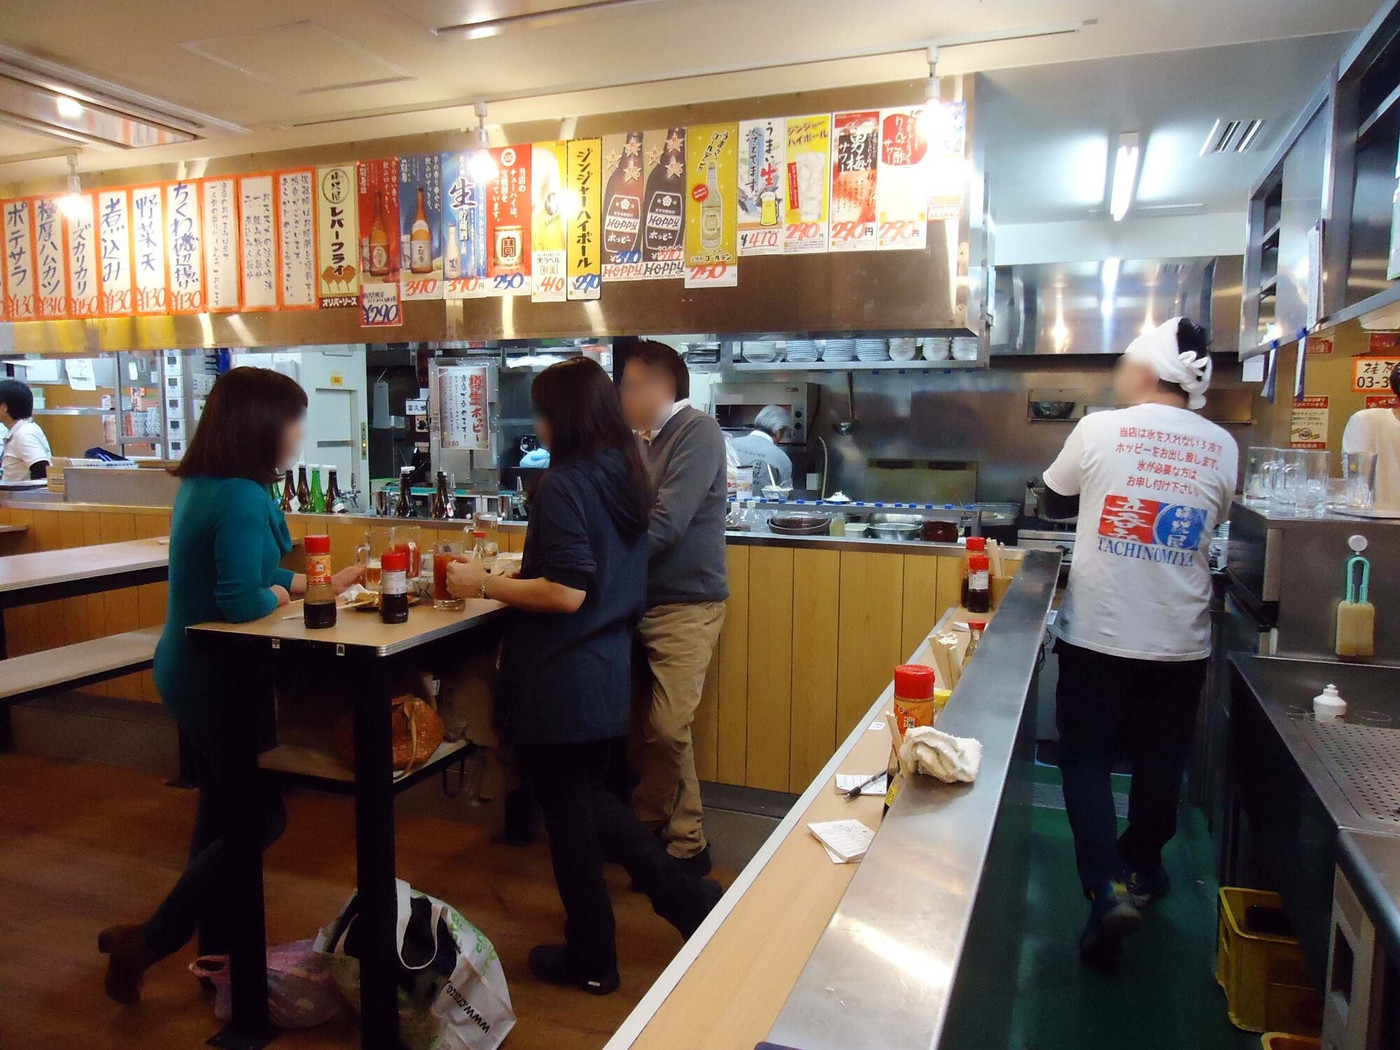 「立呑み 晩杯屋 武蔵小山本店」内観 887579 厨房方面を望む。